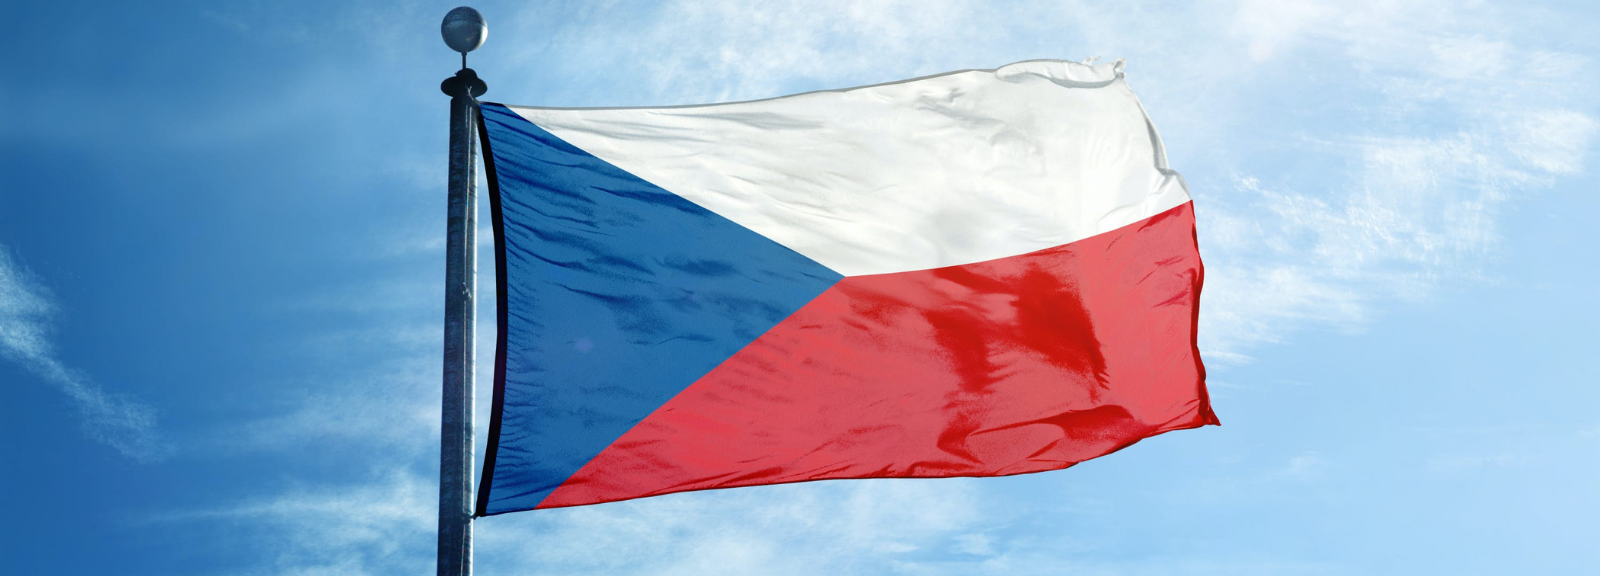 The Czech Republic flag.